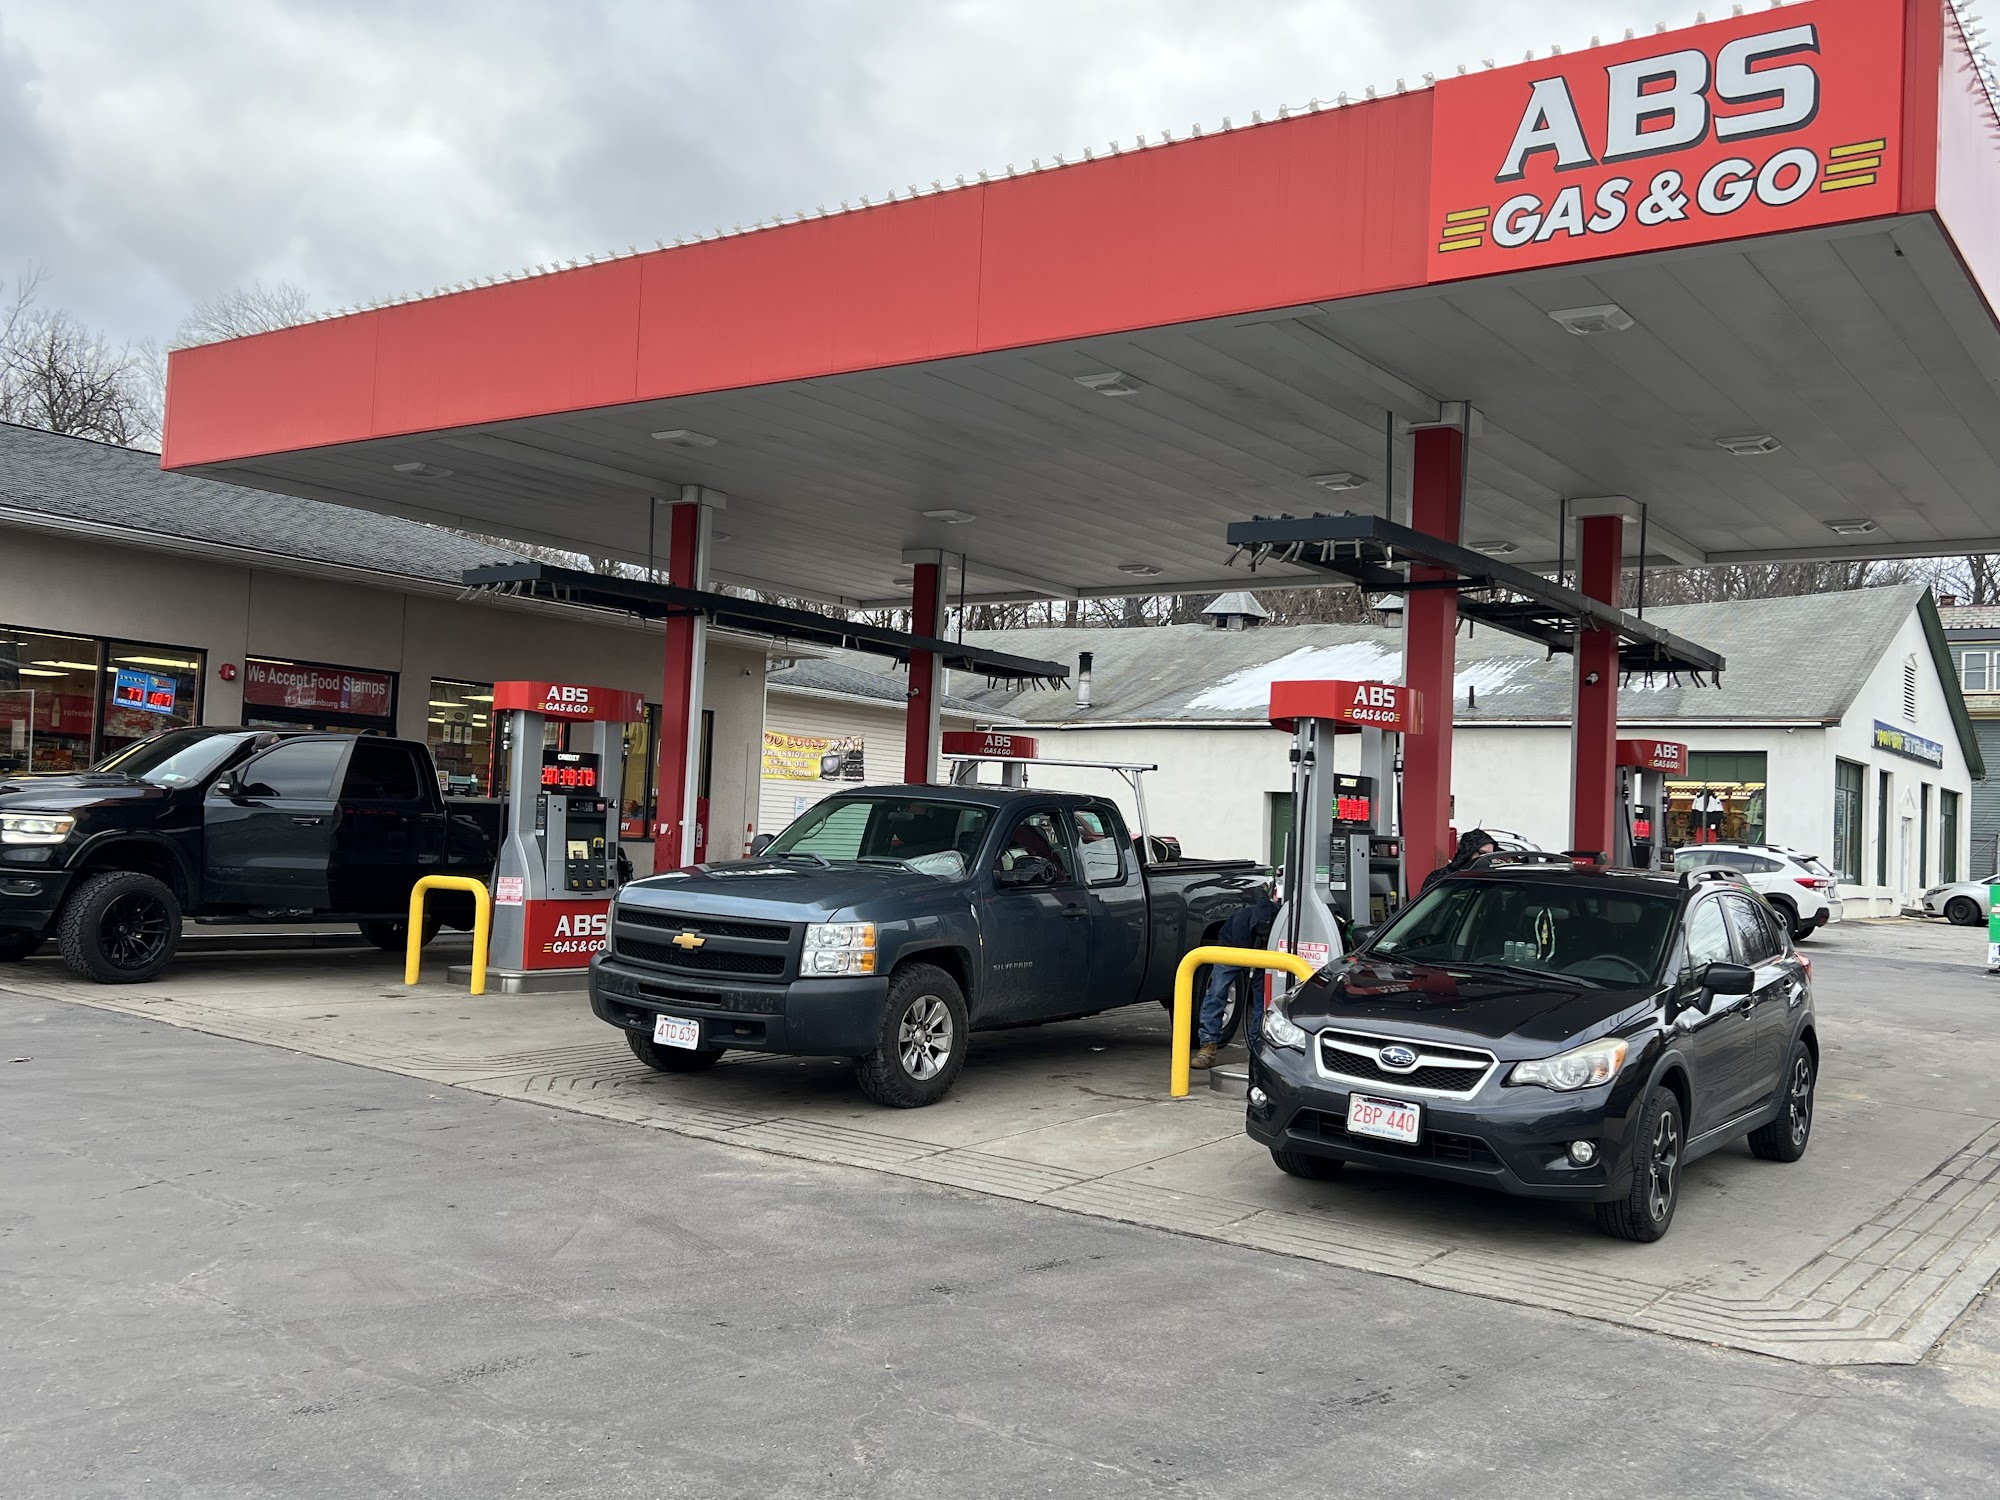 ABS Gas & Go Check Cashing